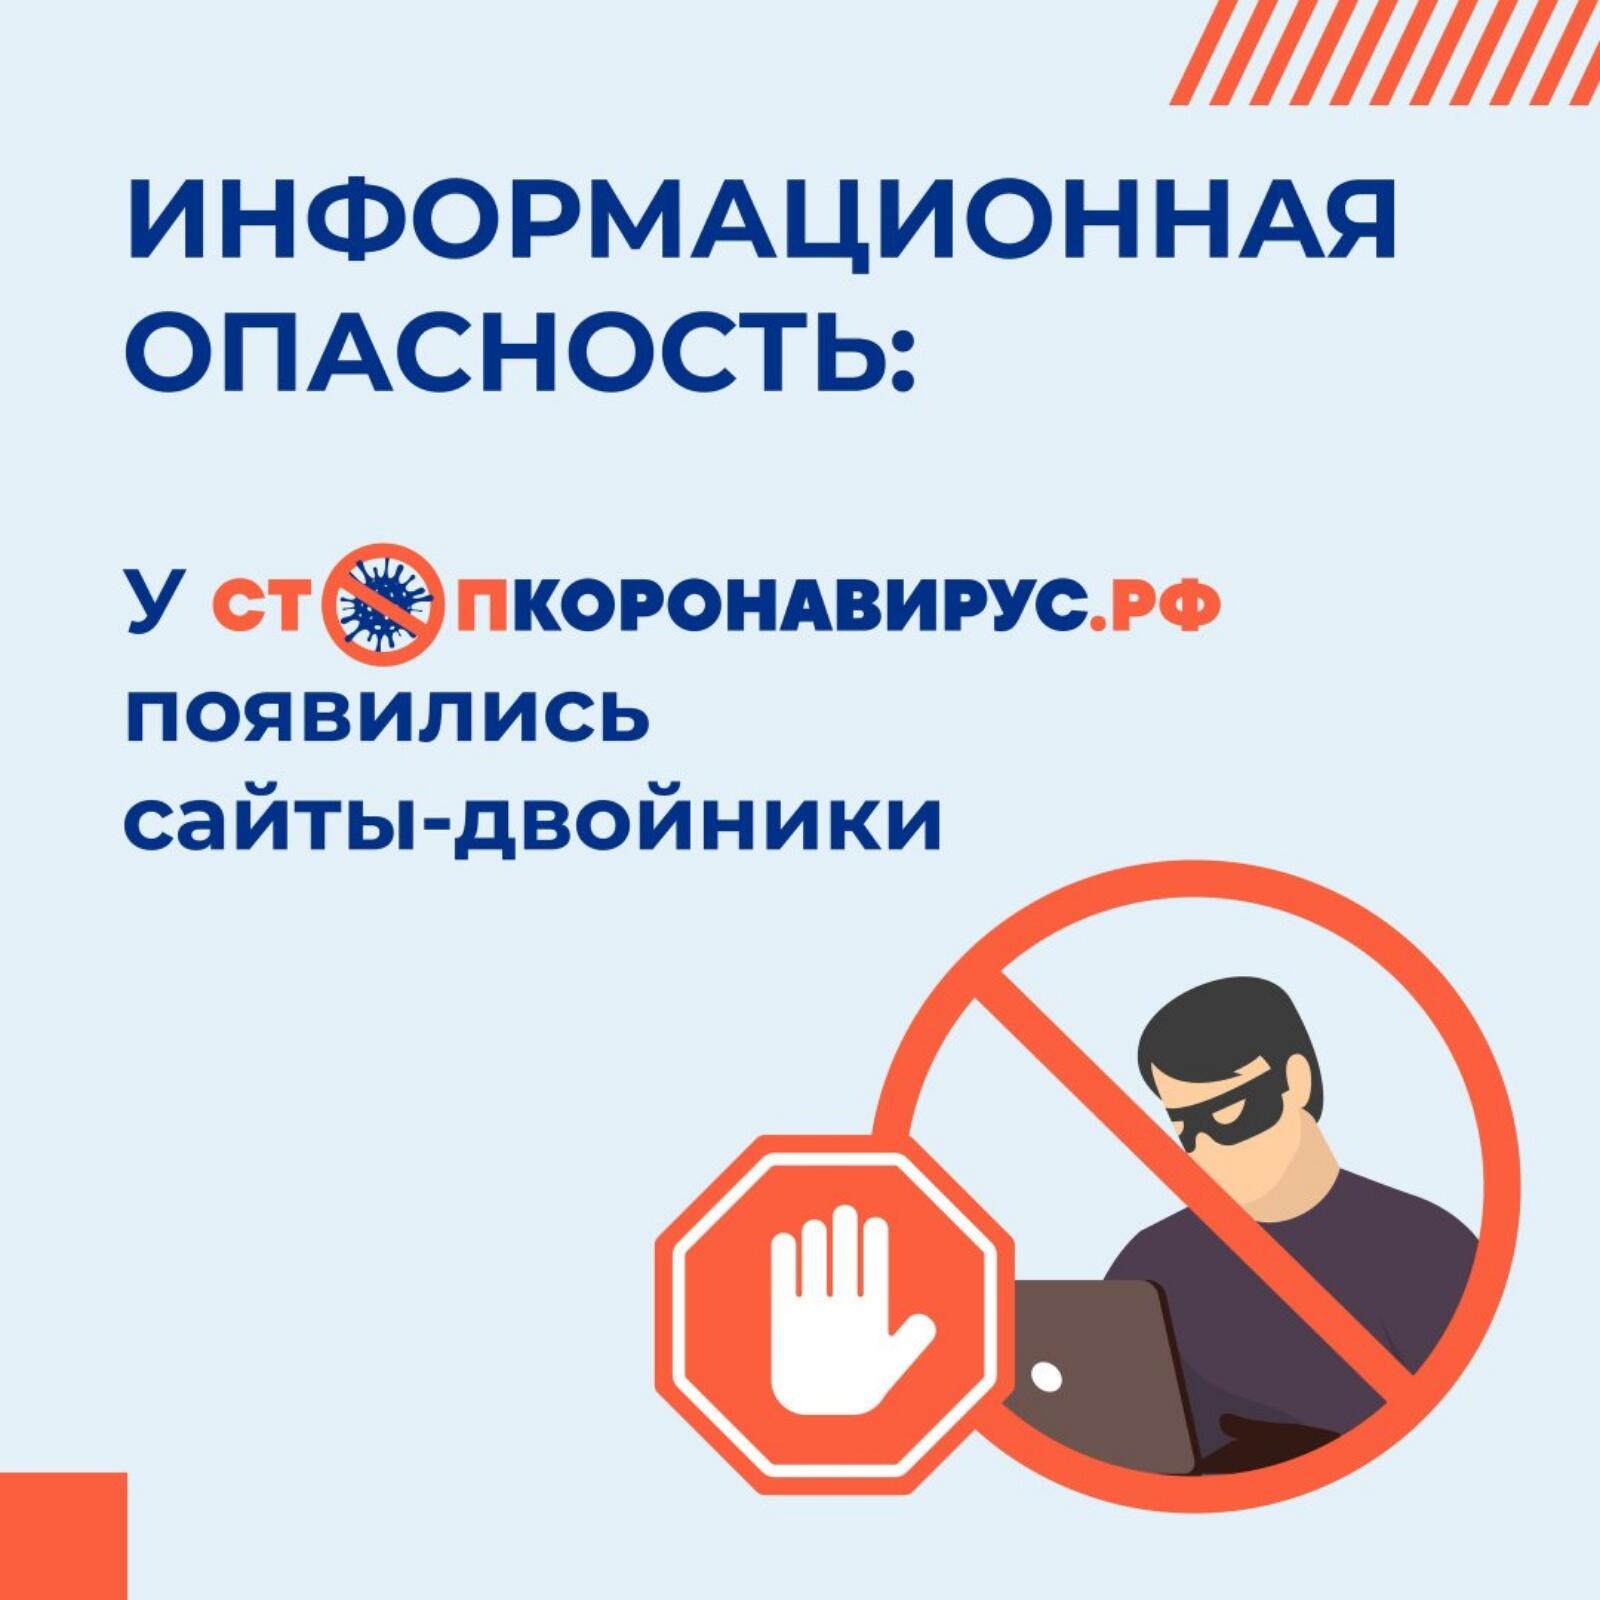 Будьте бдительны!» – призывает портал стопкоронавирус.рф